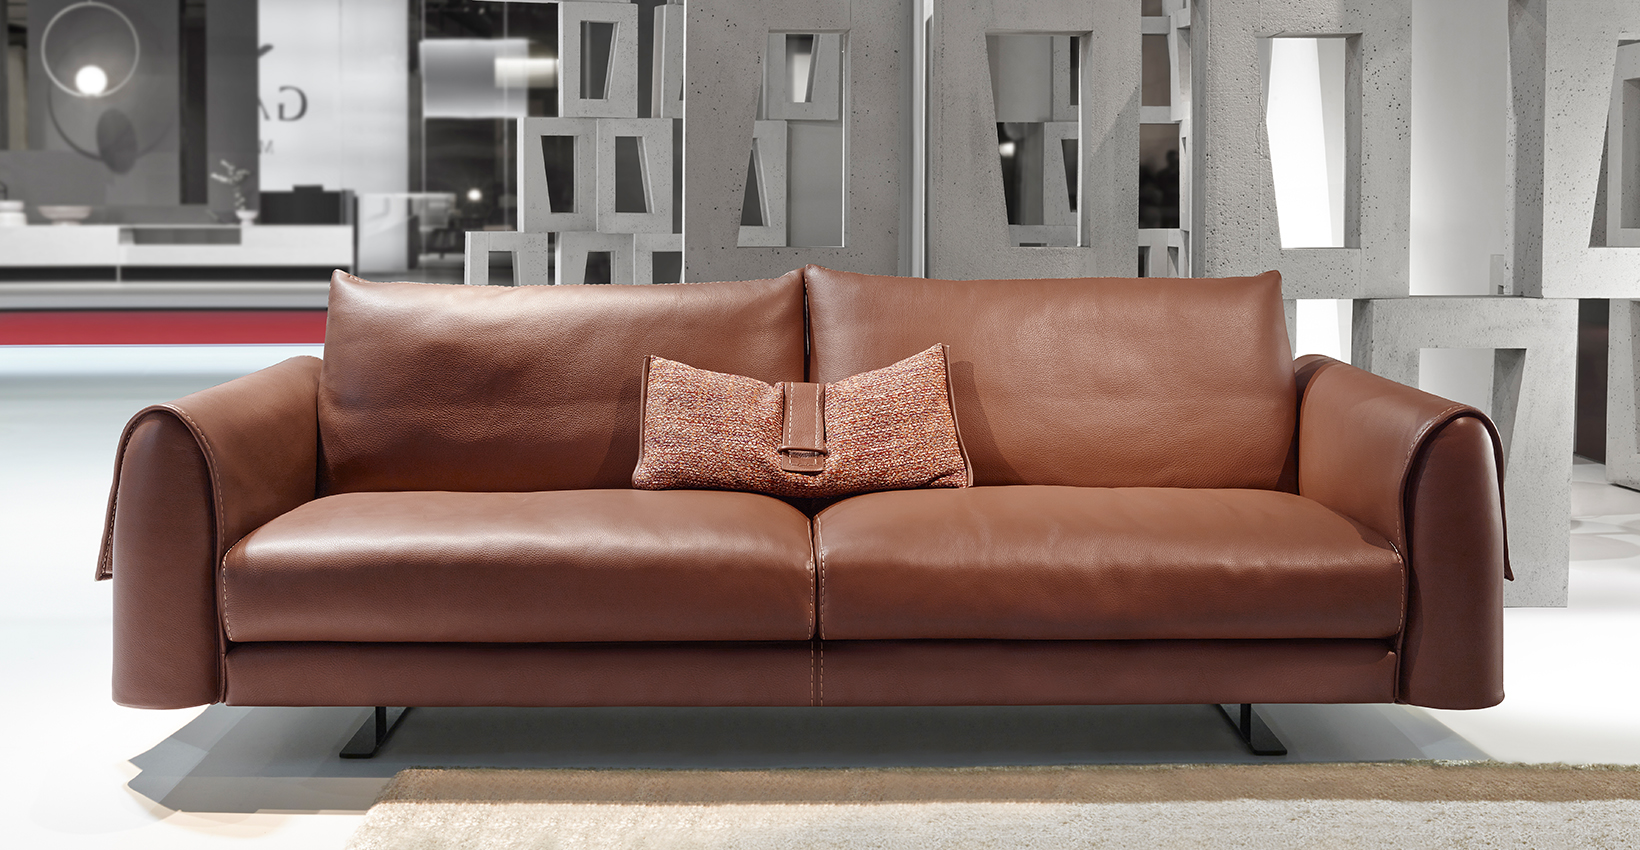 Cuatro consejos prácticos para cuidar tu sofá de cuero - La Voz